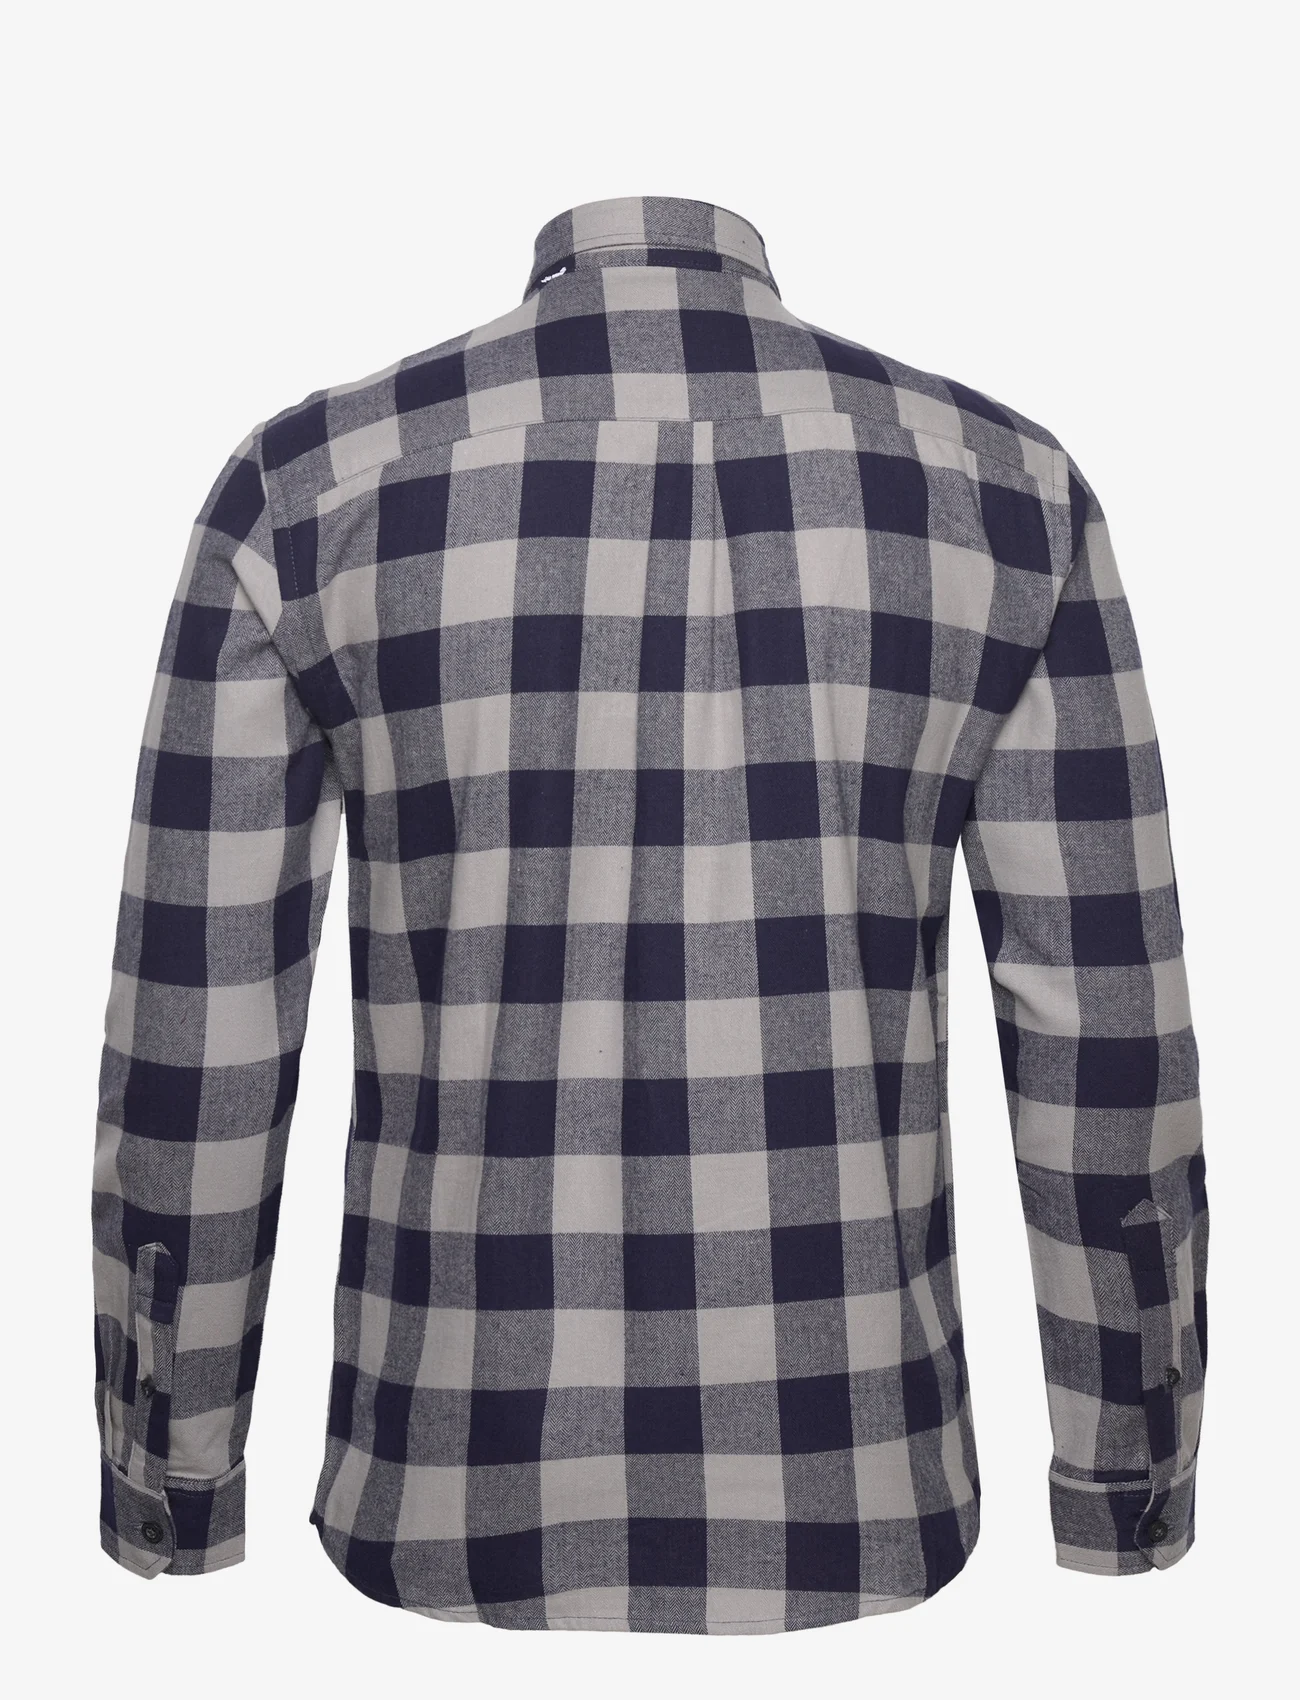 Denim project - Check Shirt - checkered shirts - check 2 / navy grey check - 1